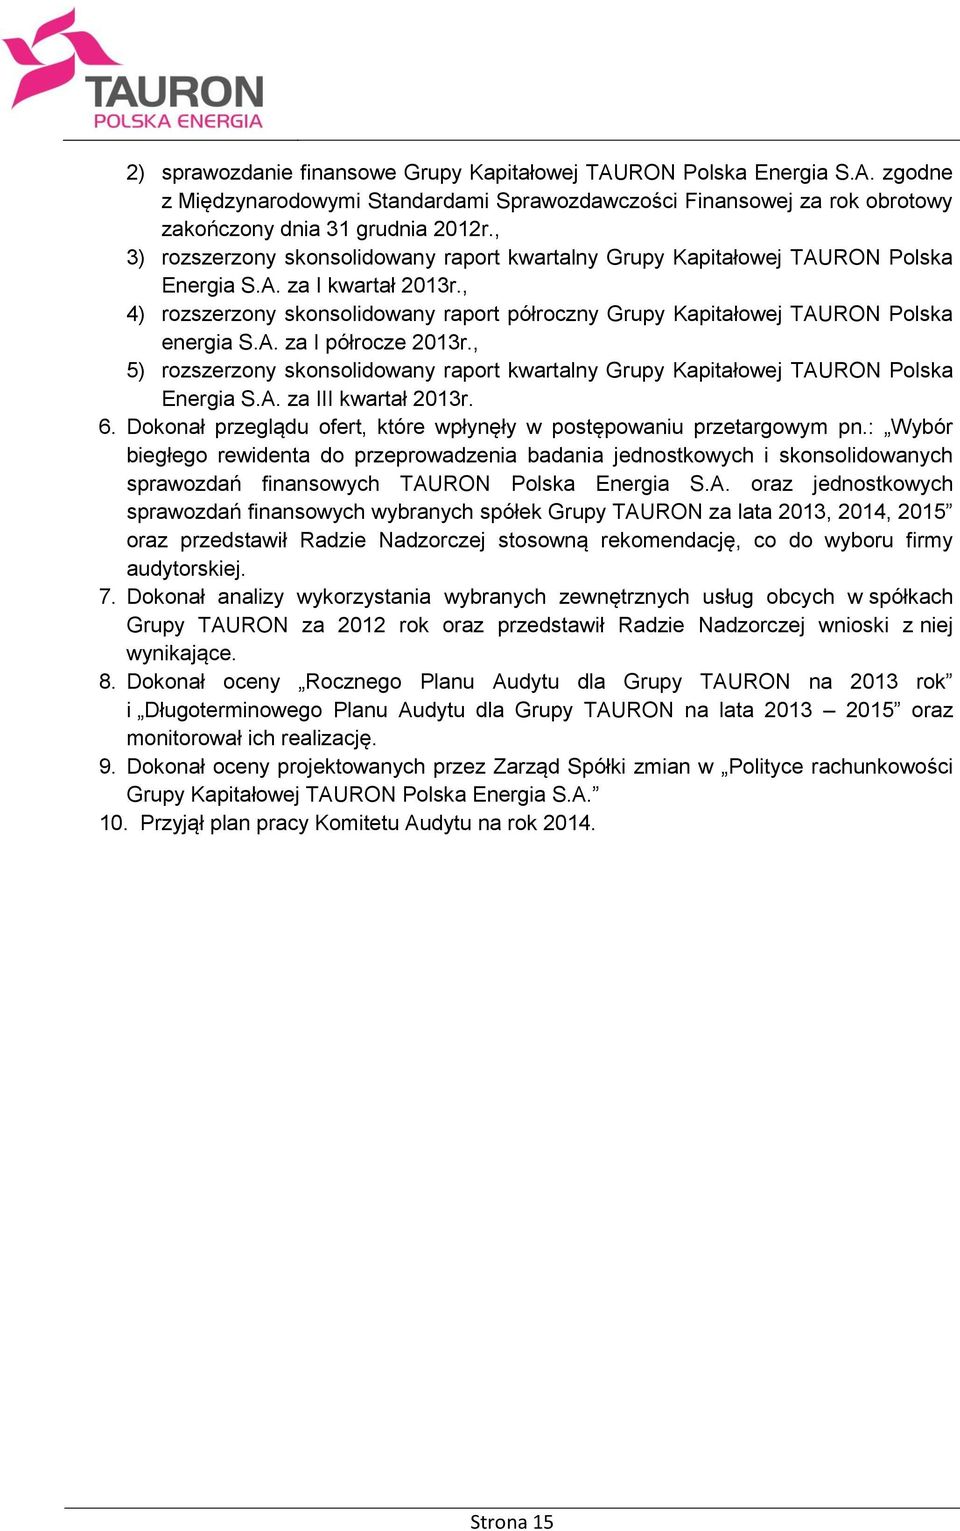 , 4) rozszerzony skonsolidowany raport półroczny Grupy Kapitałowej TAURON Polska energia S.A. za I półrocze 2013r.